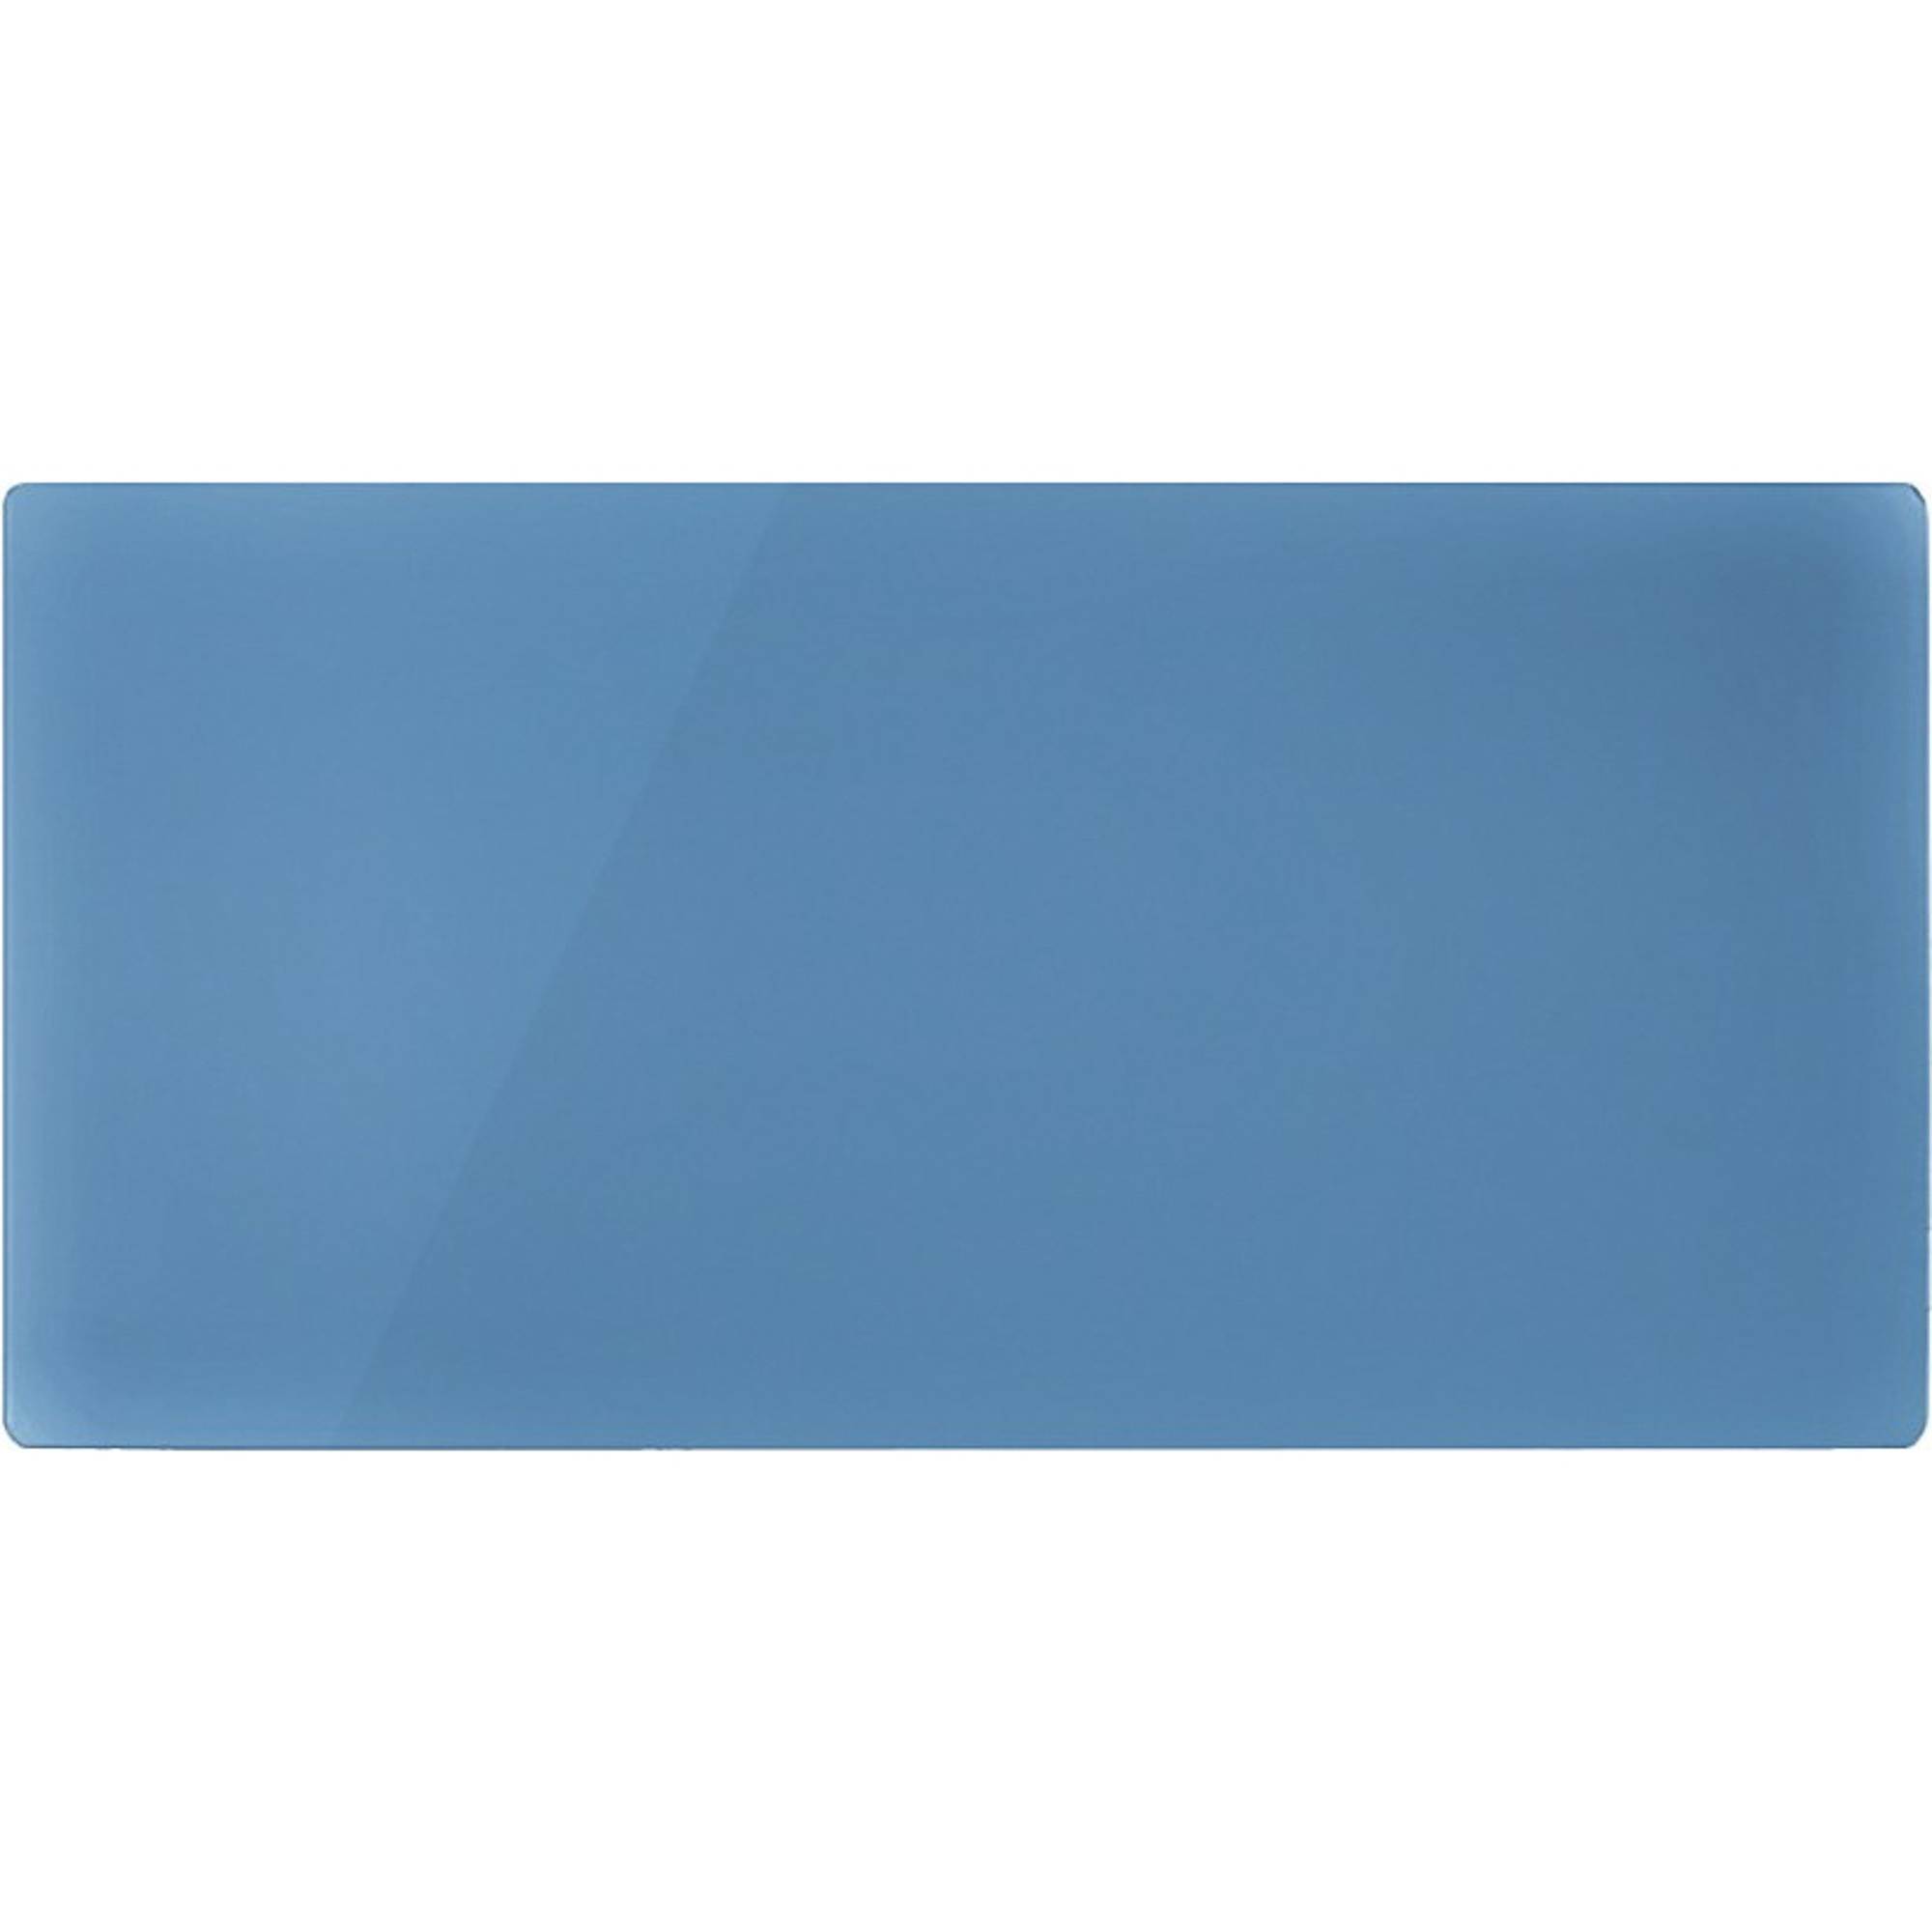 Декоративная панель Nobo NDG4 062 Retro Blue беспроводной блок nobo sikom gsm